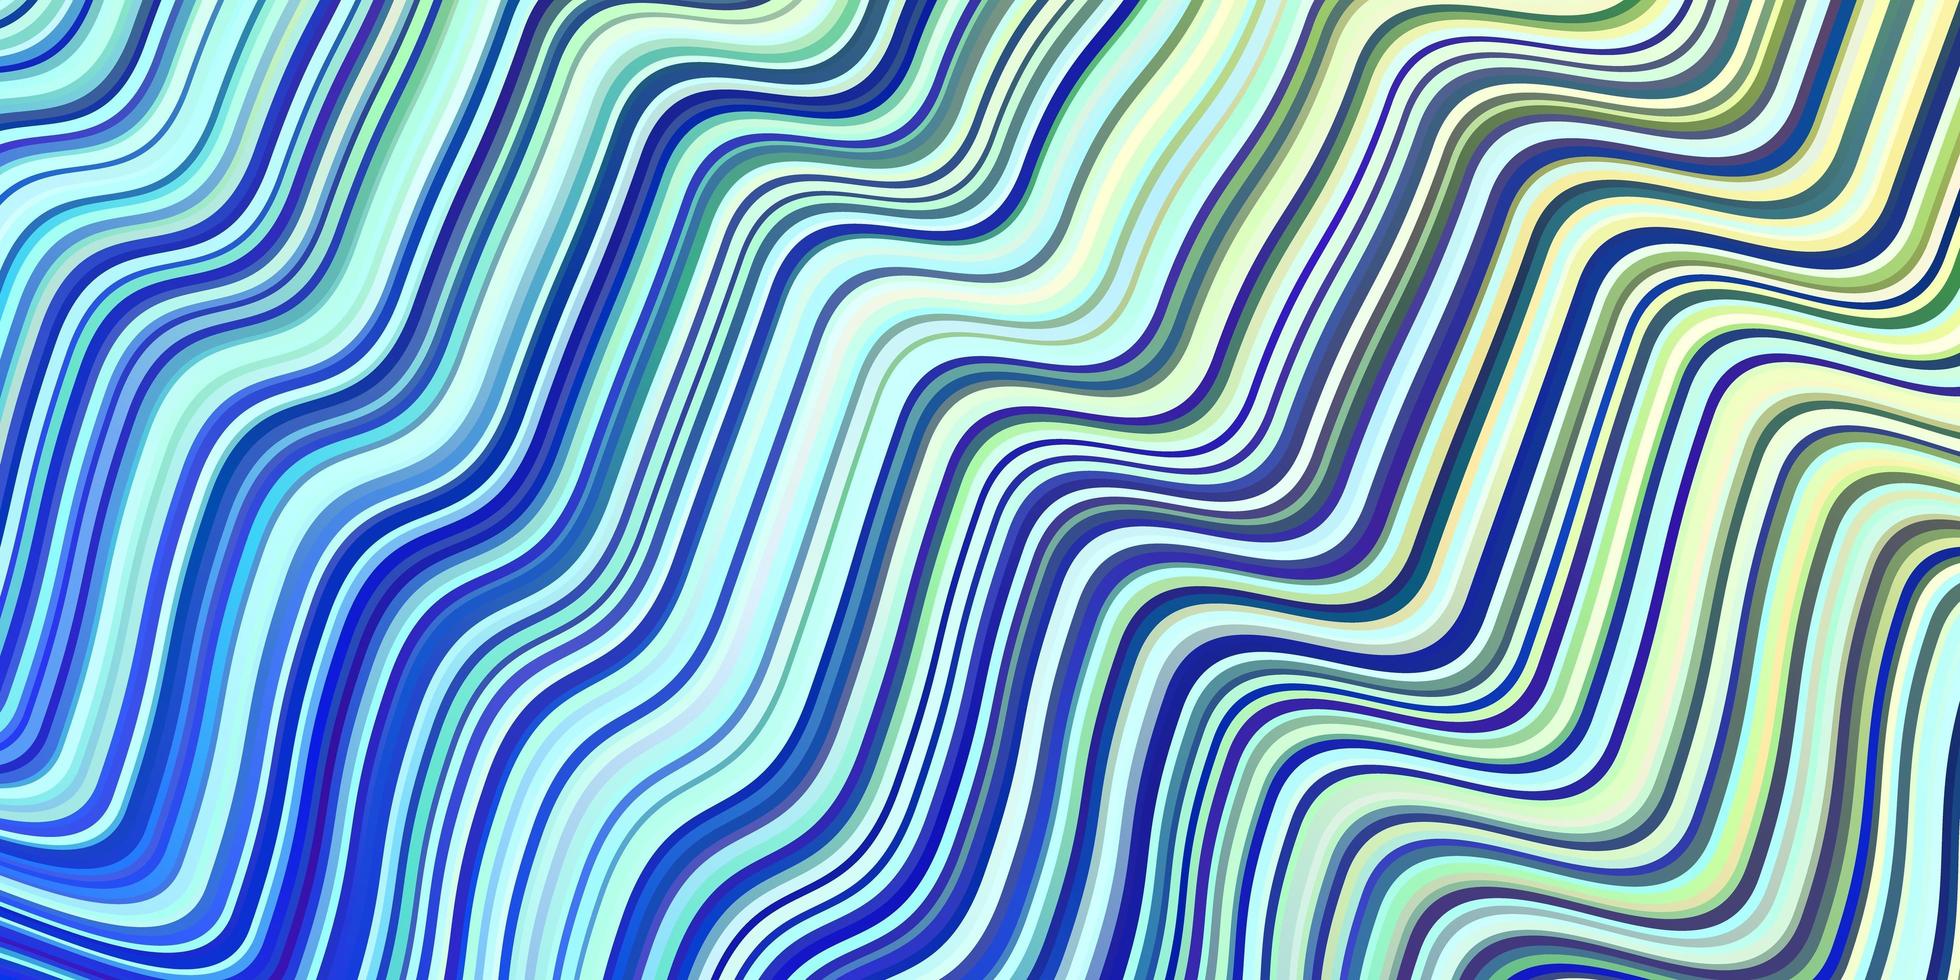 textura de vetor azul e verde claro com linhas dobradas.